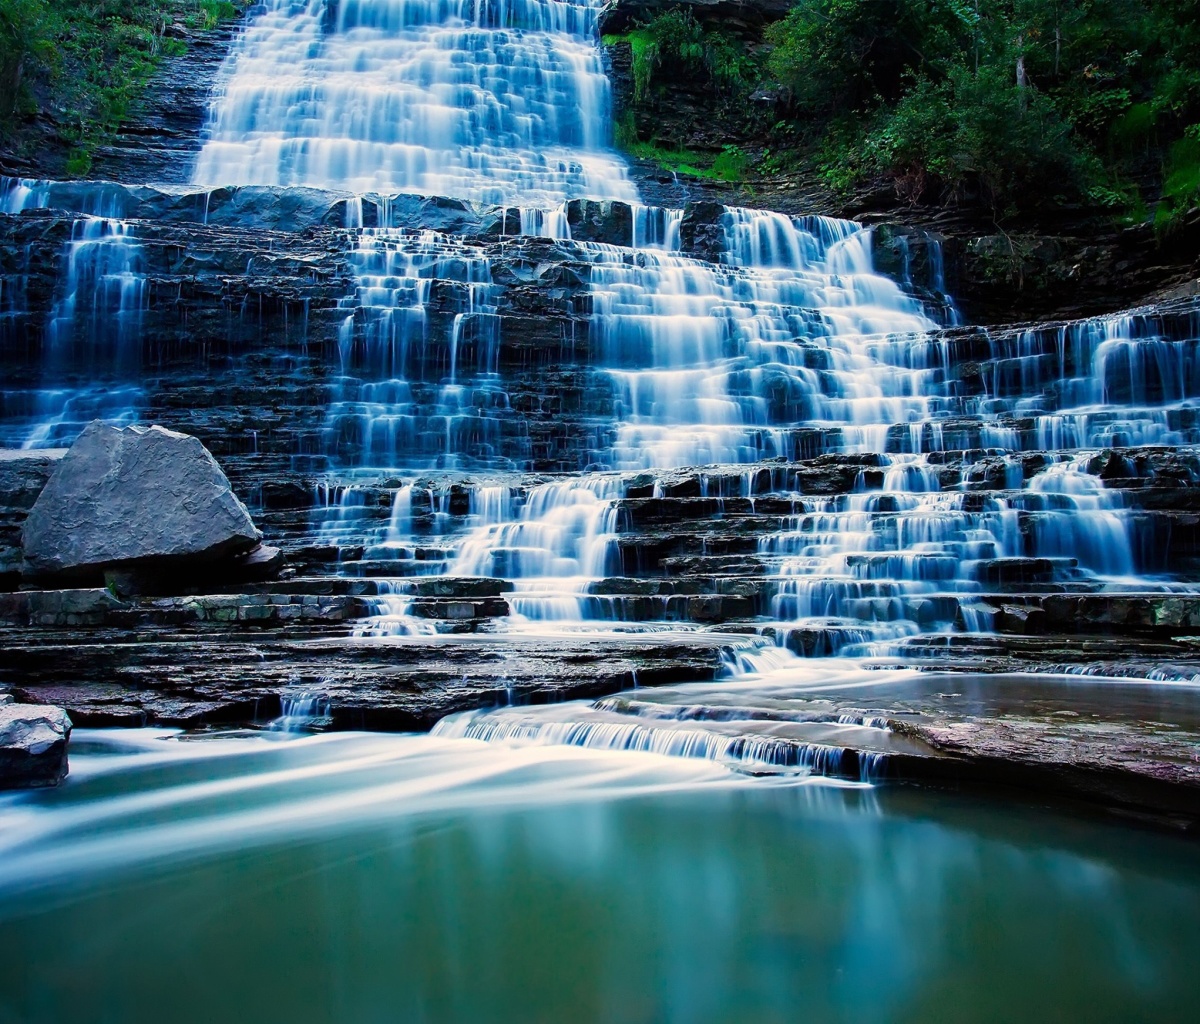 Das Albion Falls cascade waterfall in Hamilton, Ontario, Canada Wallpaper 1200x1024